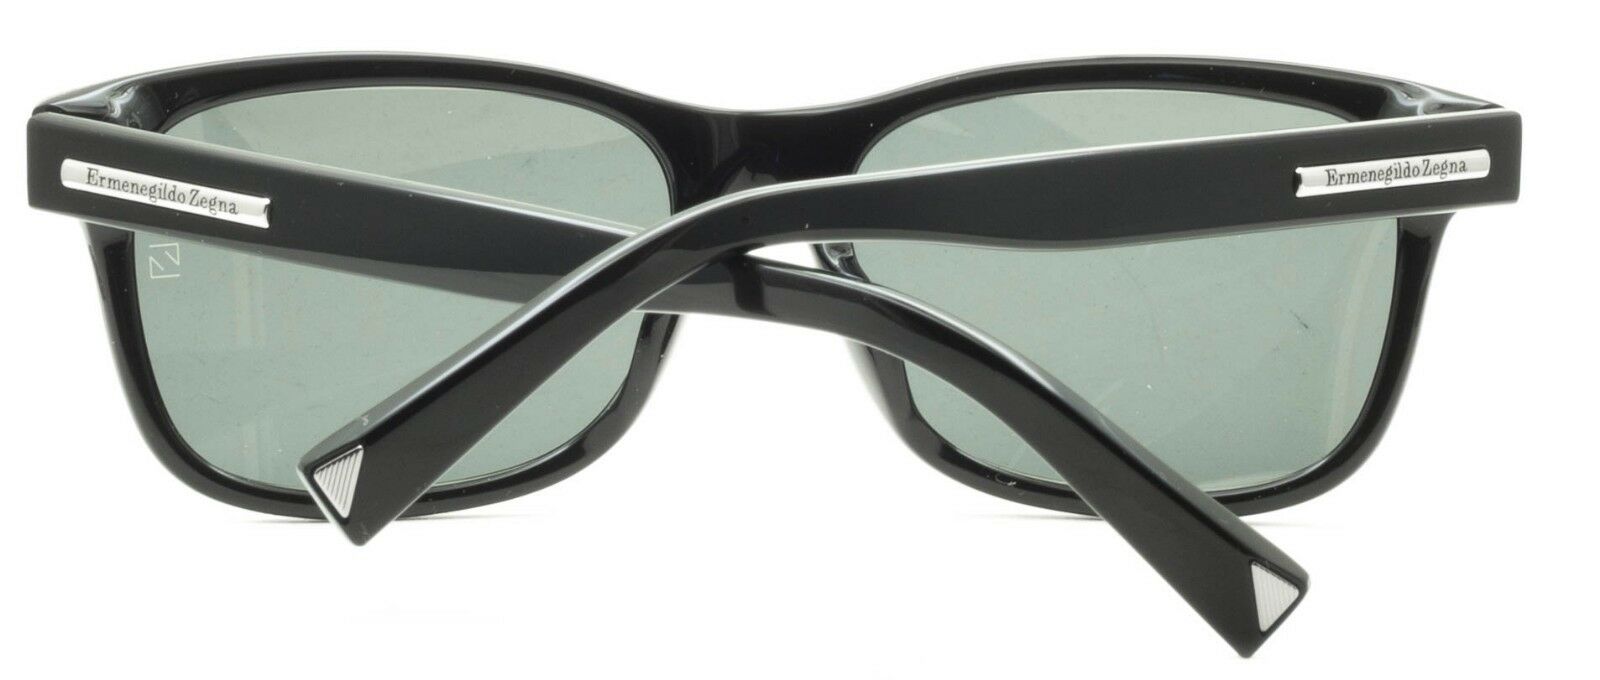 Ermenegildo Zegna EZ-1-F 01N Sunglasses Shades Glasses 100% UV New BNIB - Italy